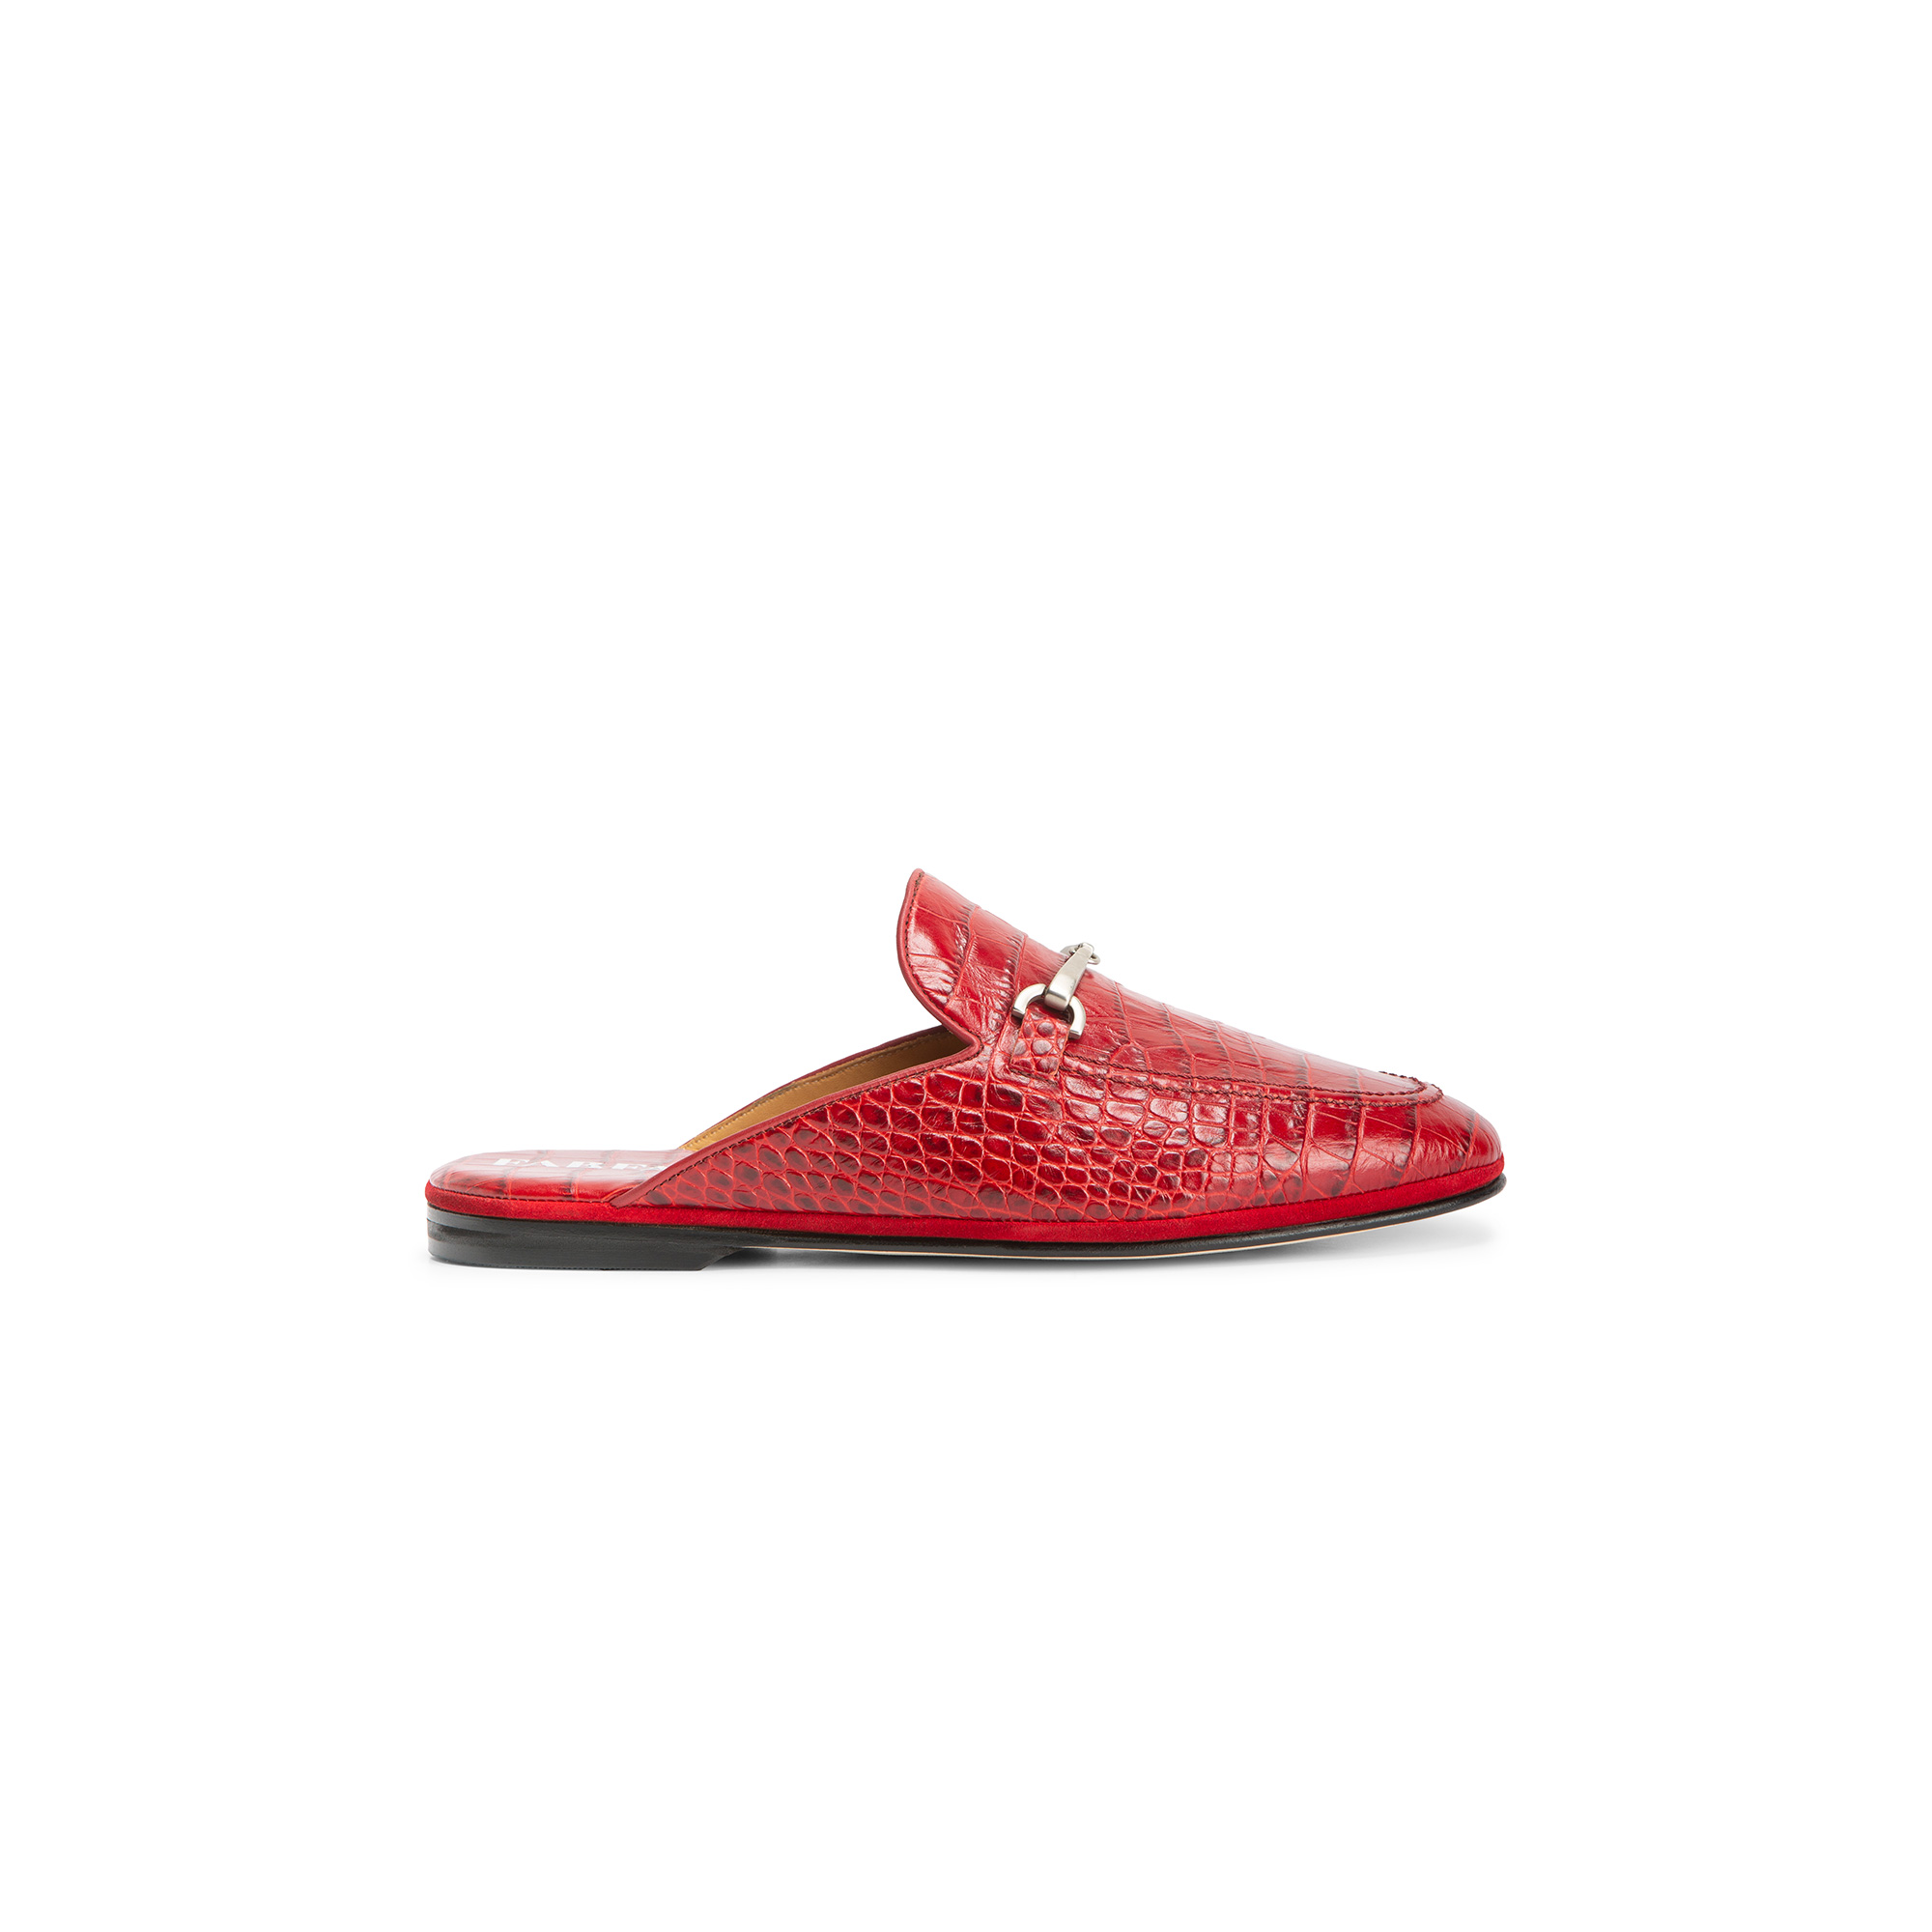 Pantofola esterno aperta pelle stampato cocco rosso - Farfalla italian slippers